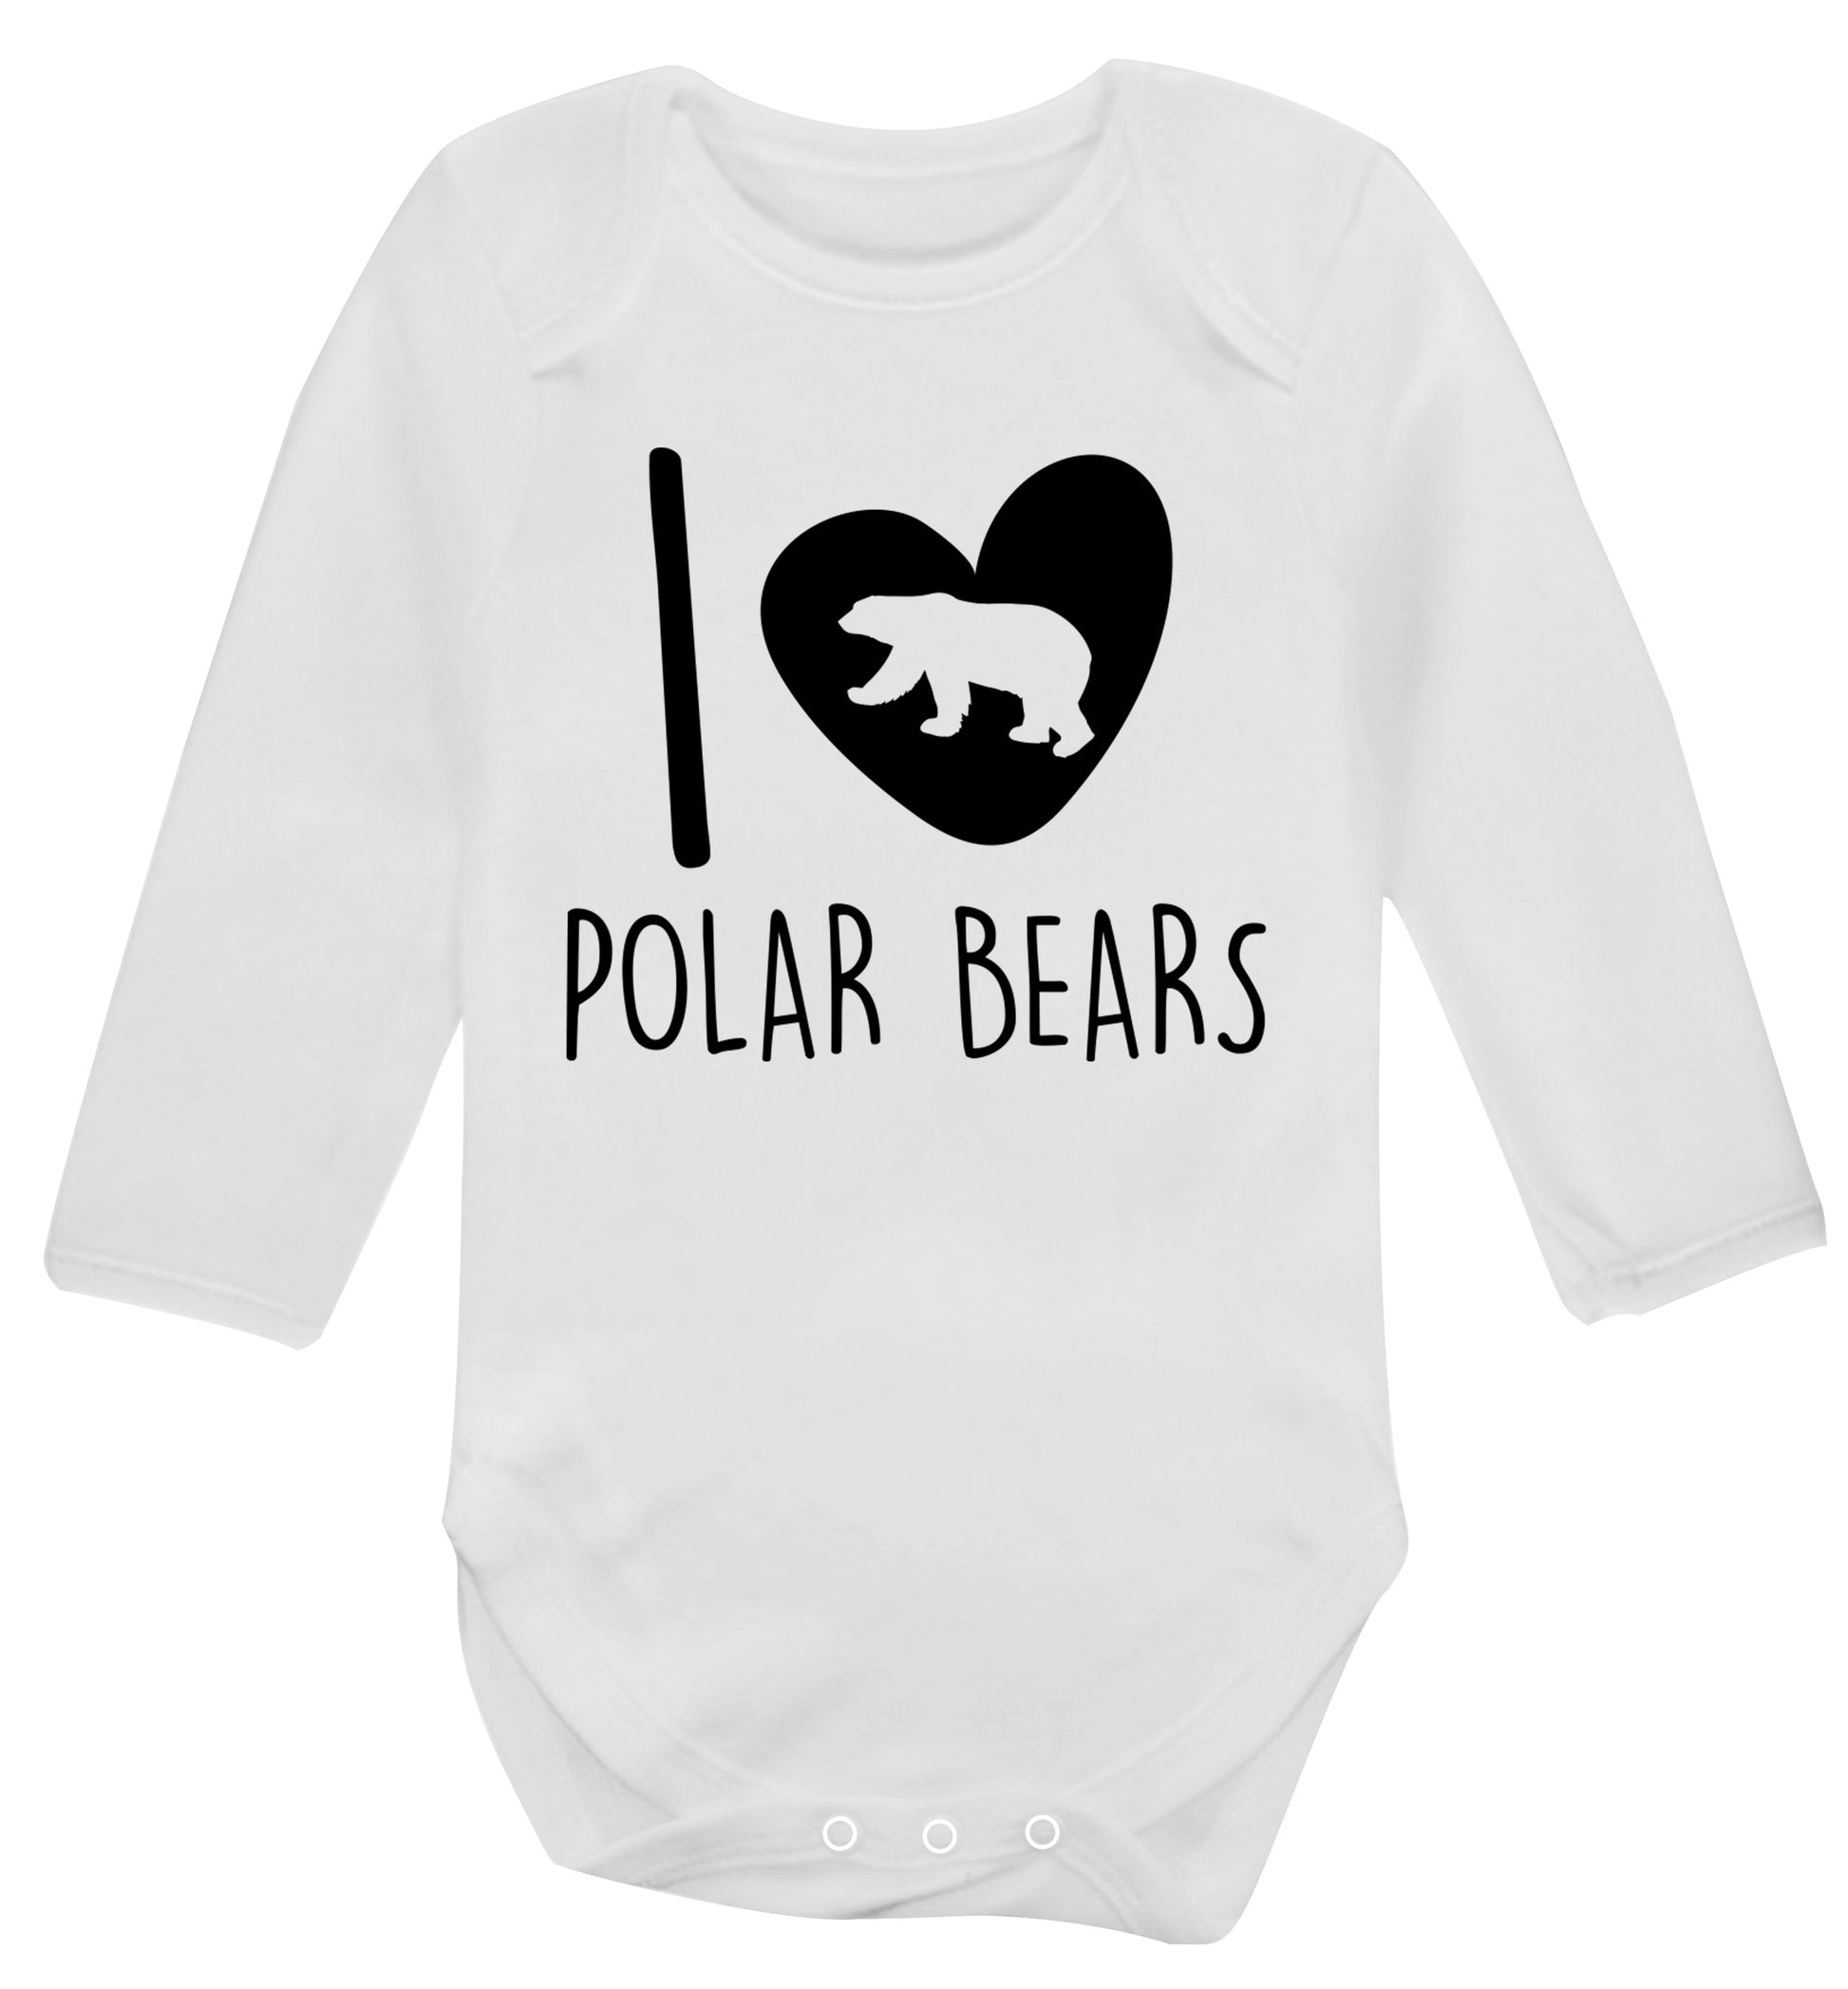 I Love Polar Bears Baby Vest long sleeved white 6-12 months